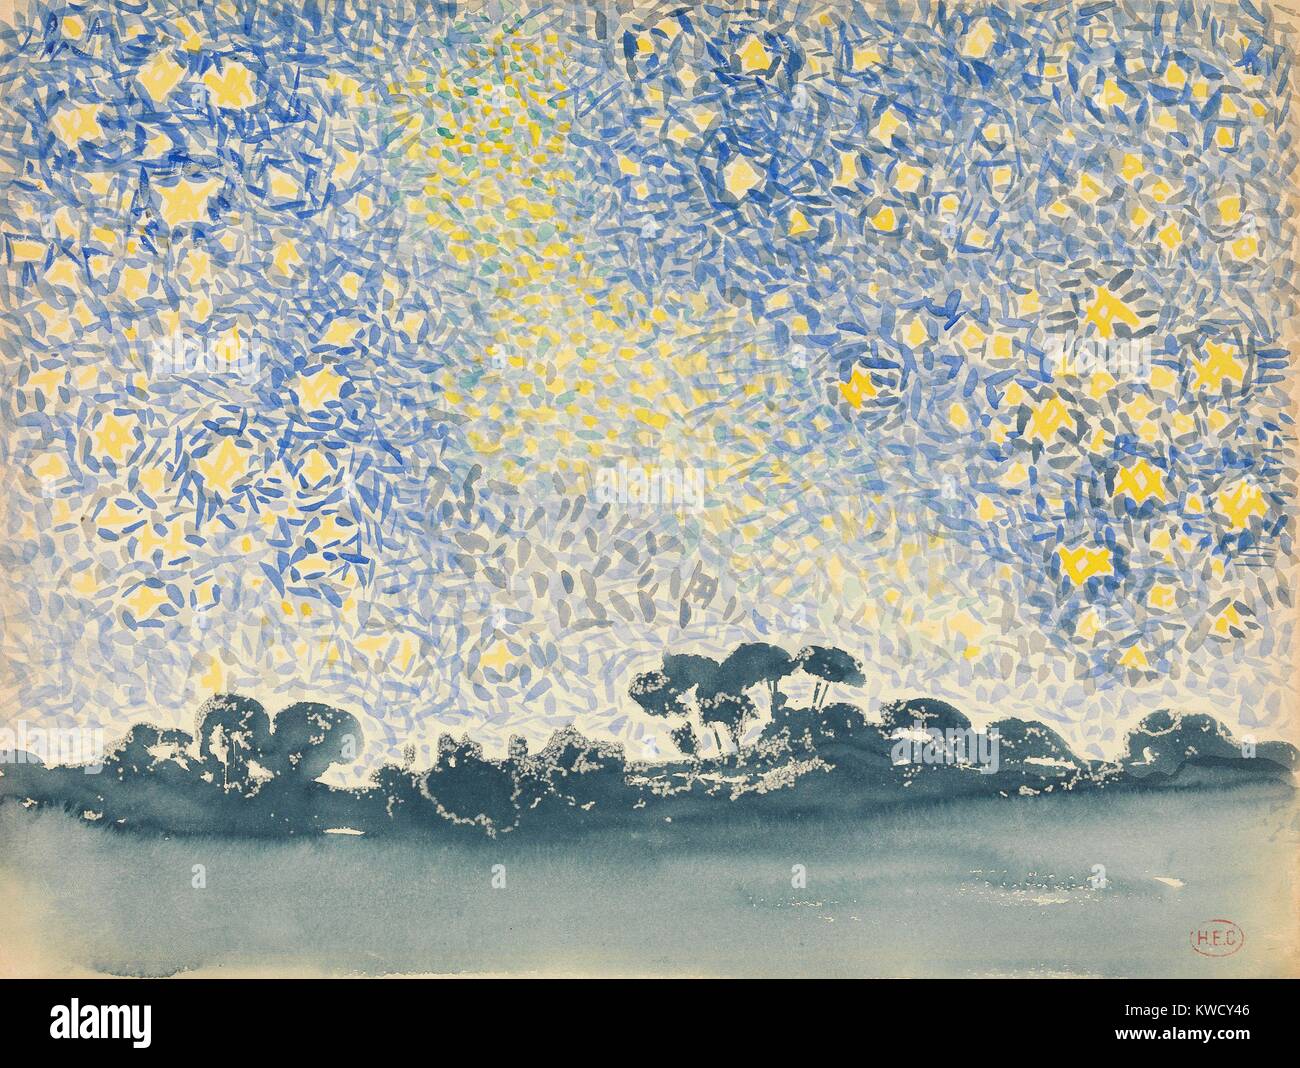 Landschaft mit Sternen, von Henri-Edmond Cross, 1905-08, französische Neo-Impressionist Aquarell Malerei. Der Stern - durchwachsene Himmel verbindet die Pinselstriche von klaren Blau und Gelb über eine einfach Malen langweilige Landschaft (BSLOC 2017 5 107) Stockfoto